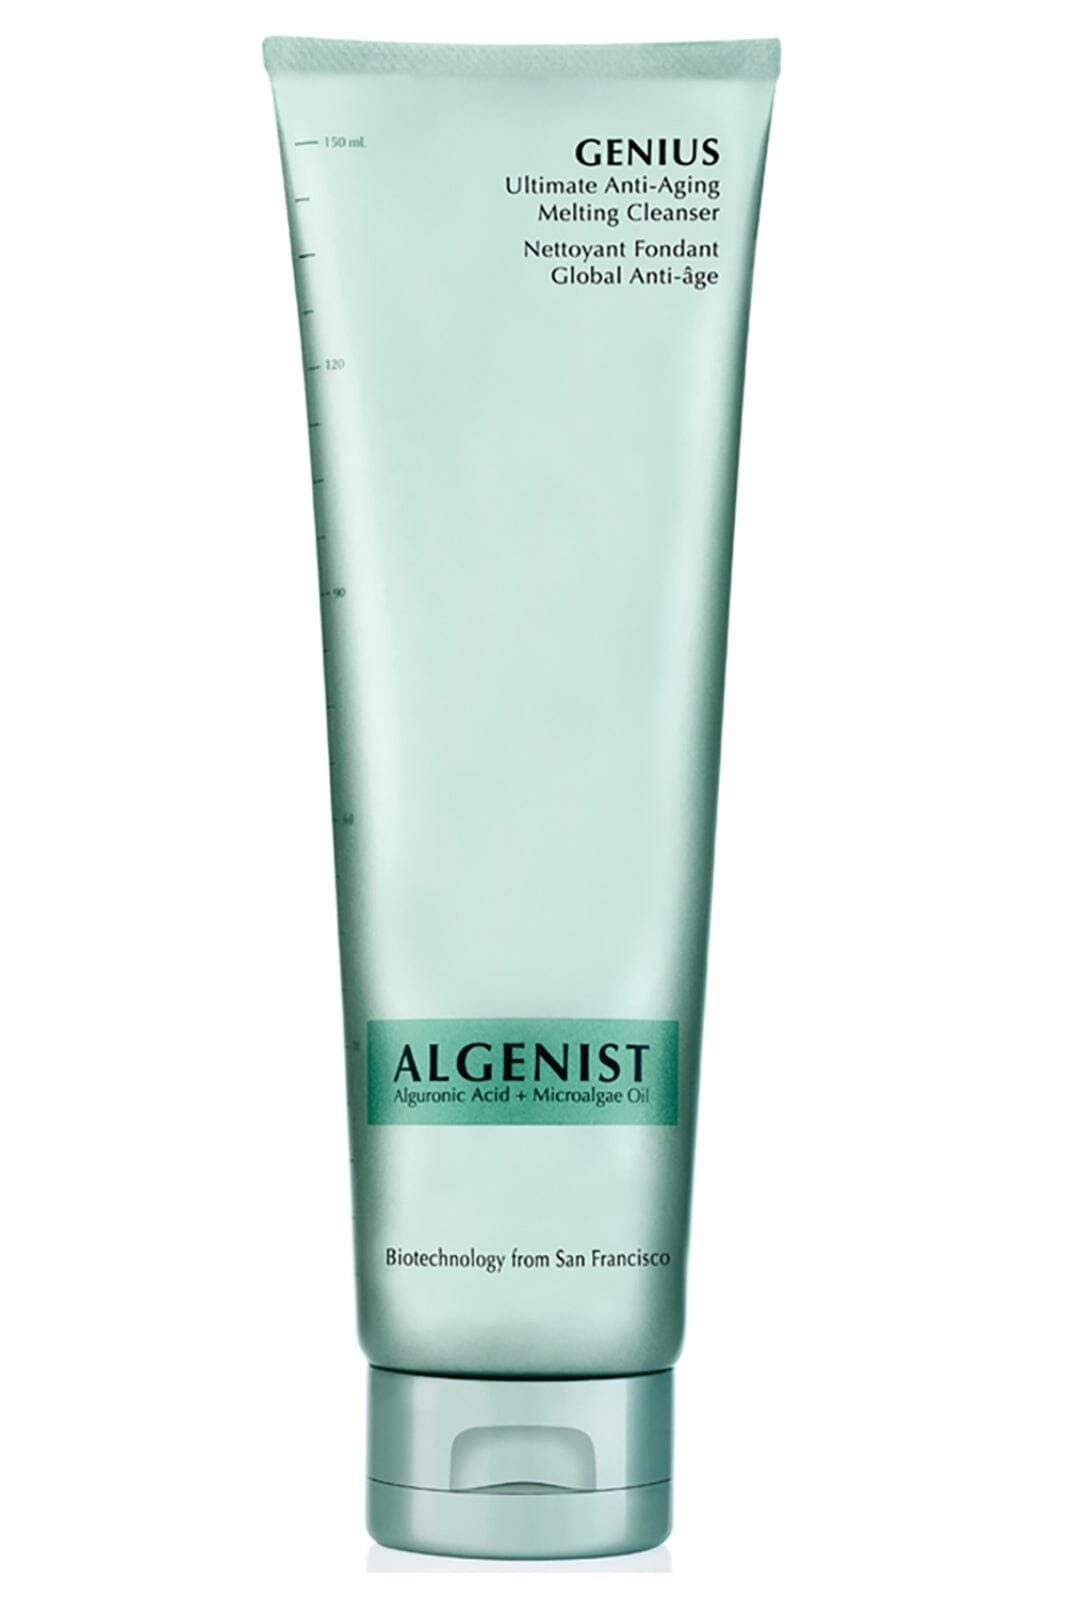 Algenist - Genius Ultimate Anti-Aging Melting Cleanser Creme 